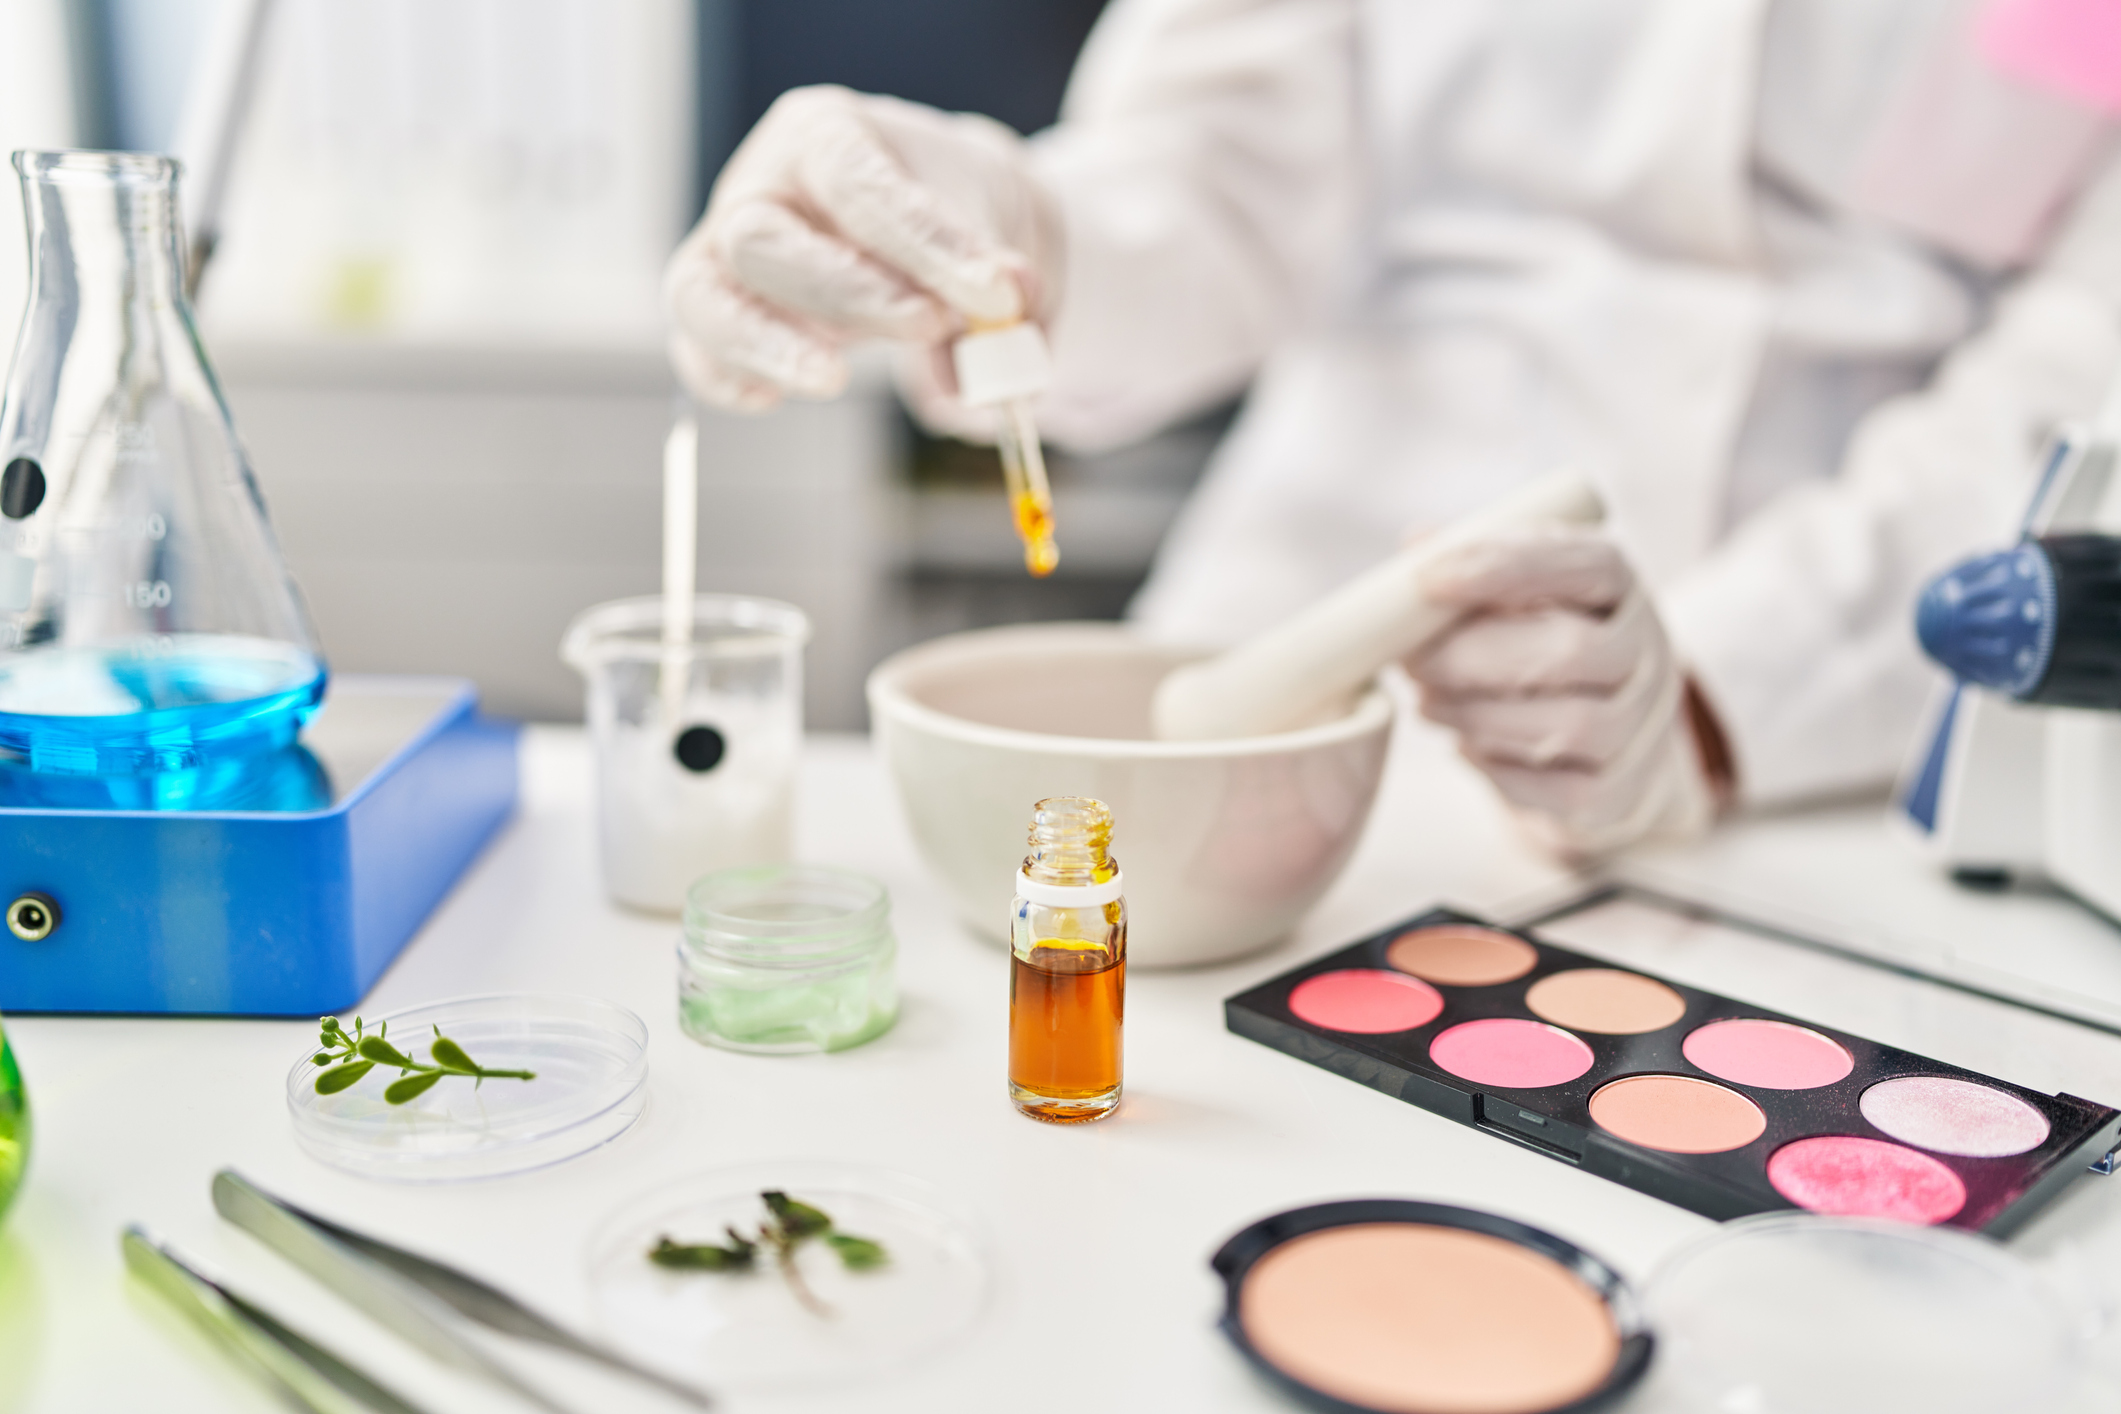 Vorschau auf das Cosmetic Direct Portal und die SPL-Richtlinien der FDA